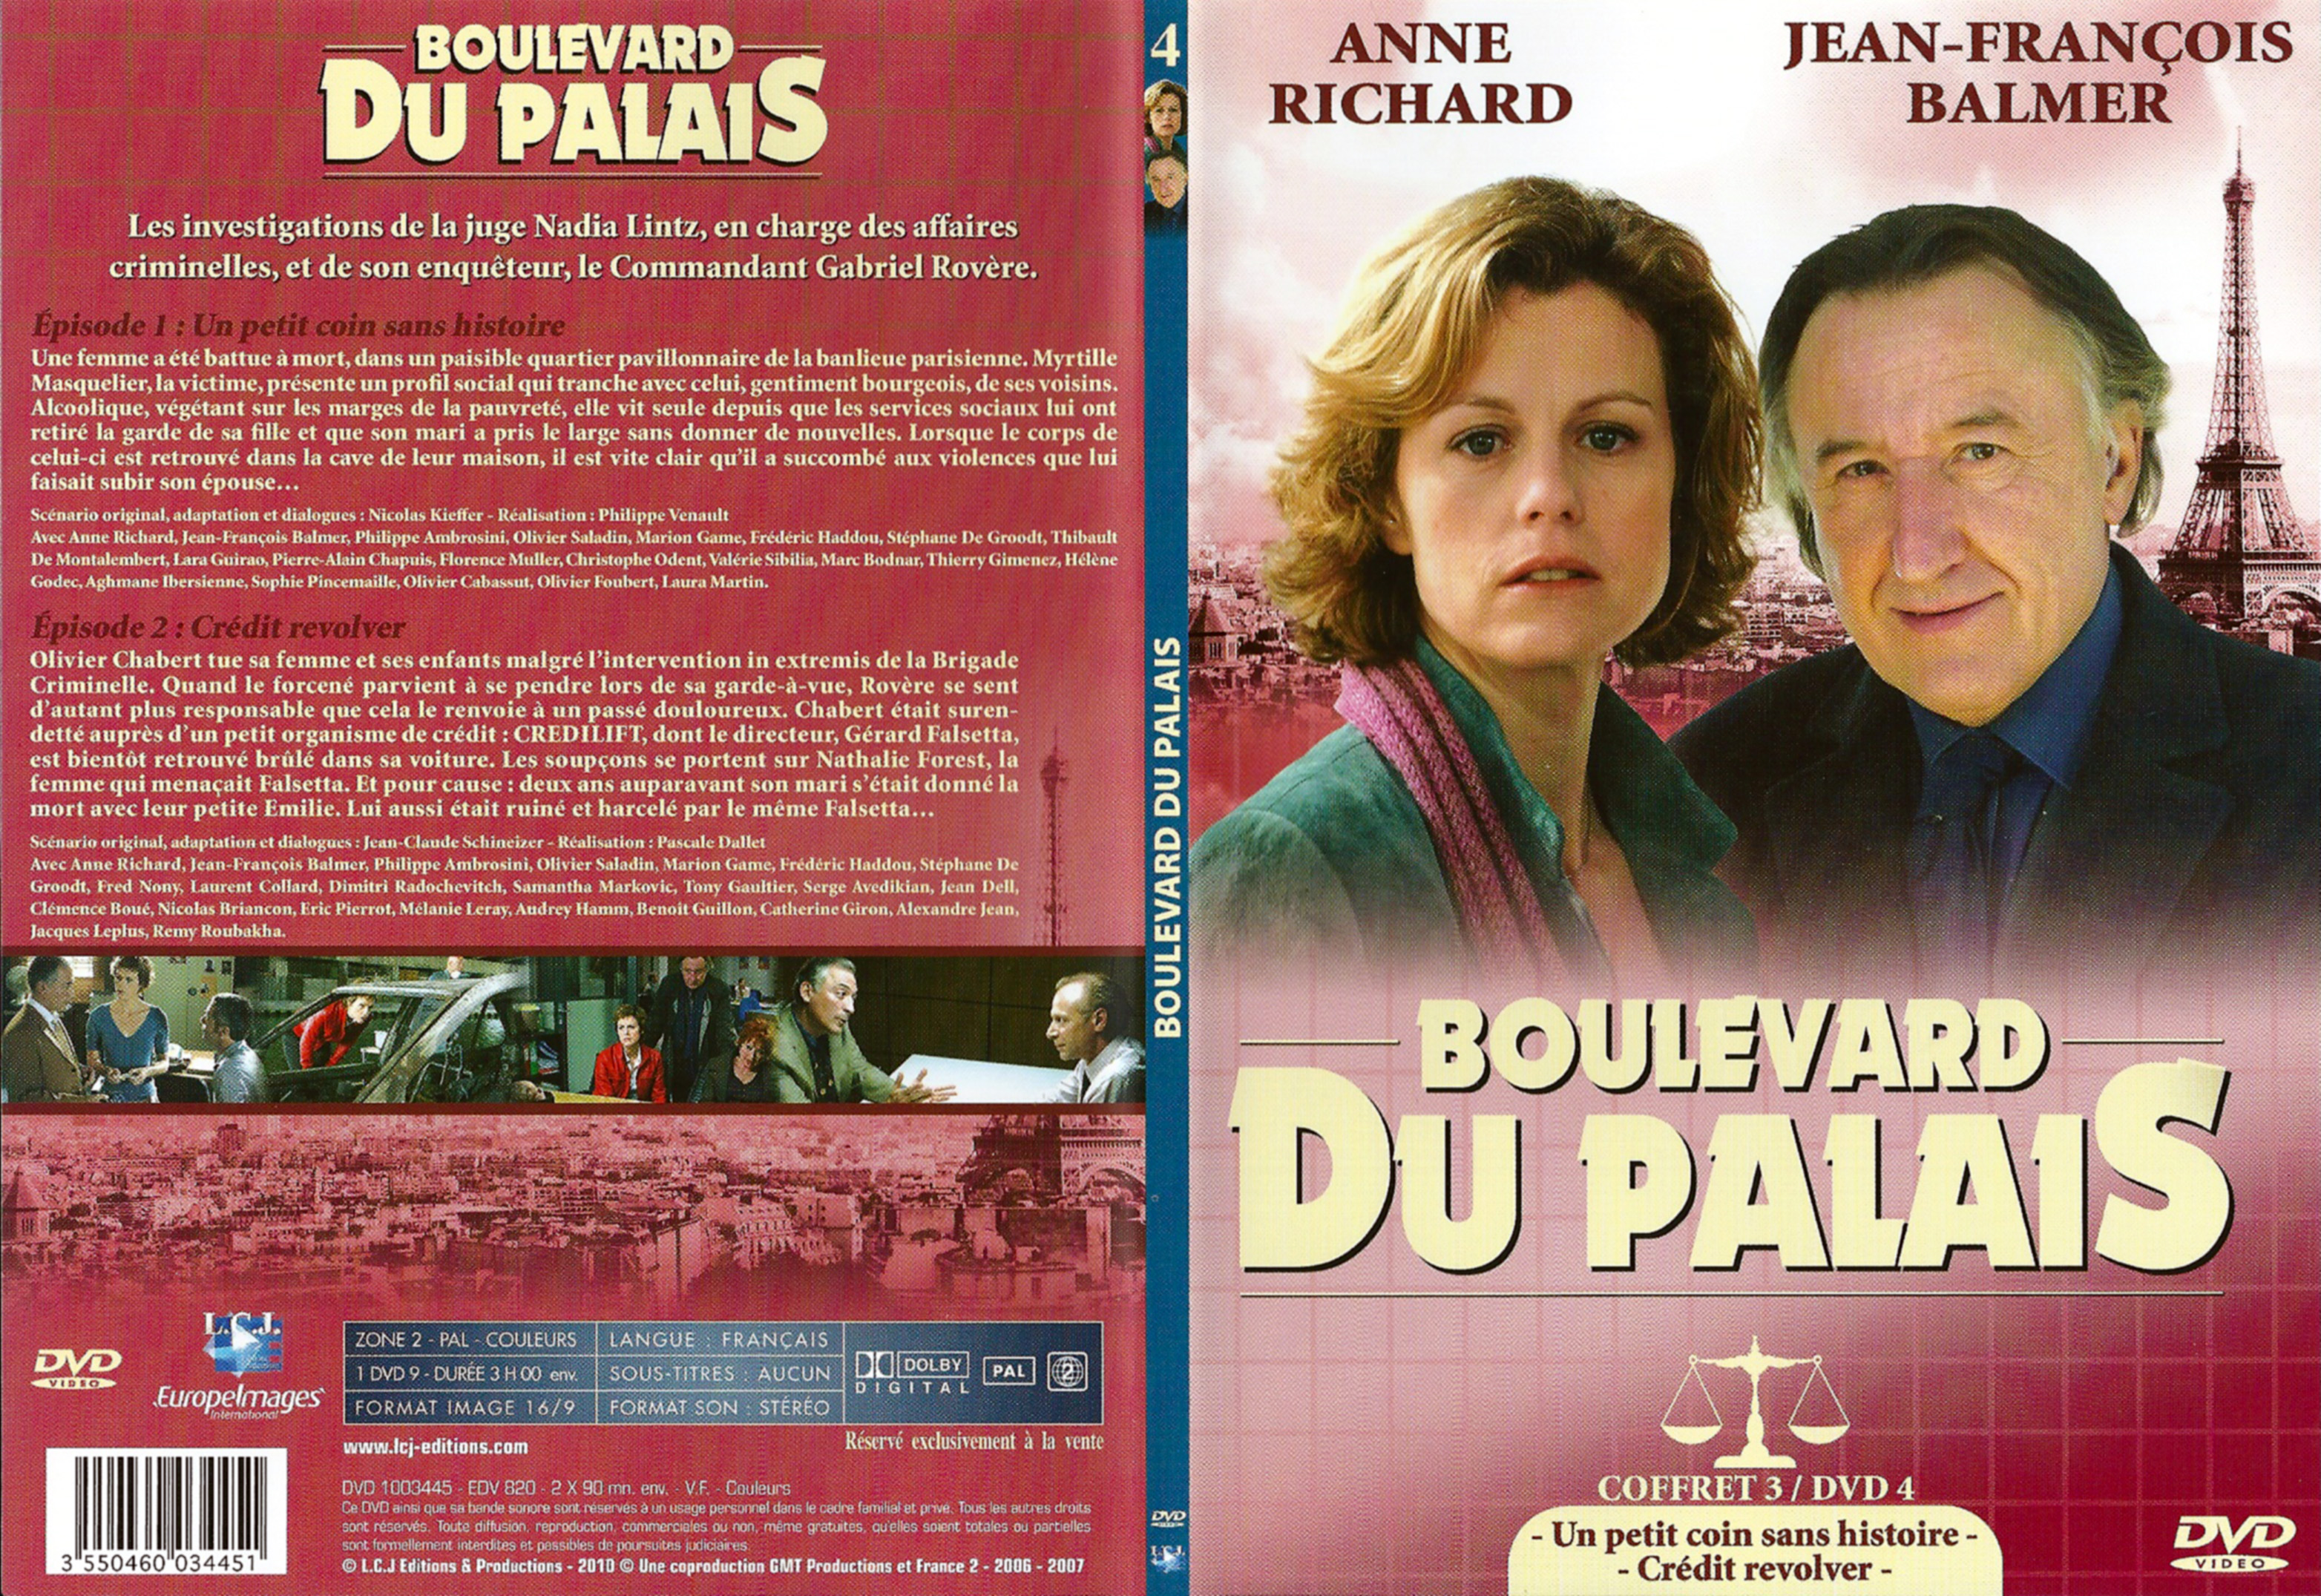 Jaquette DVD Boulevard du palais Saison 3 DVD 4